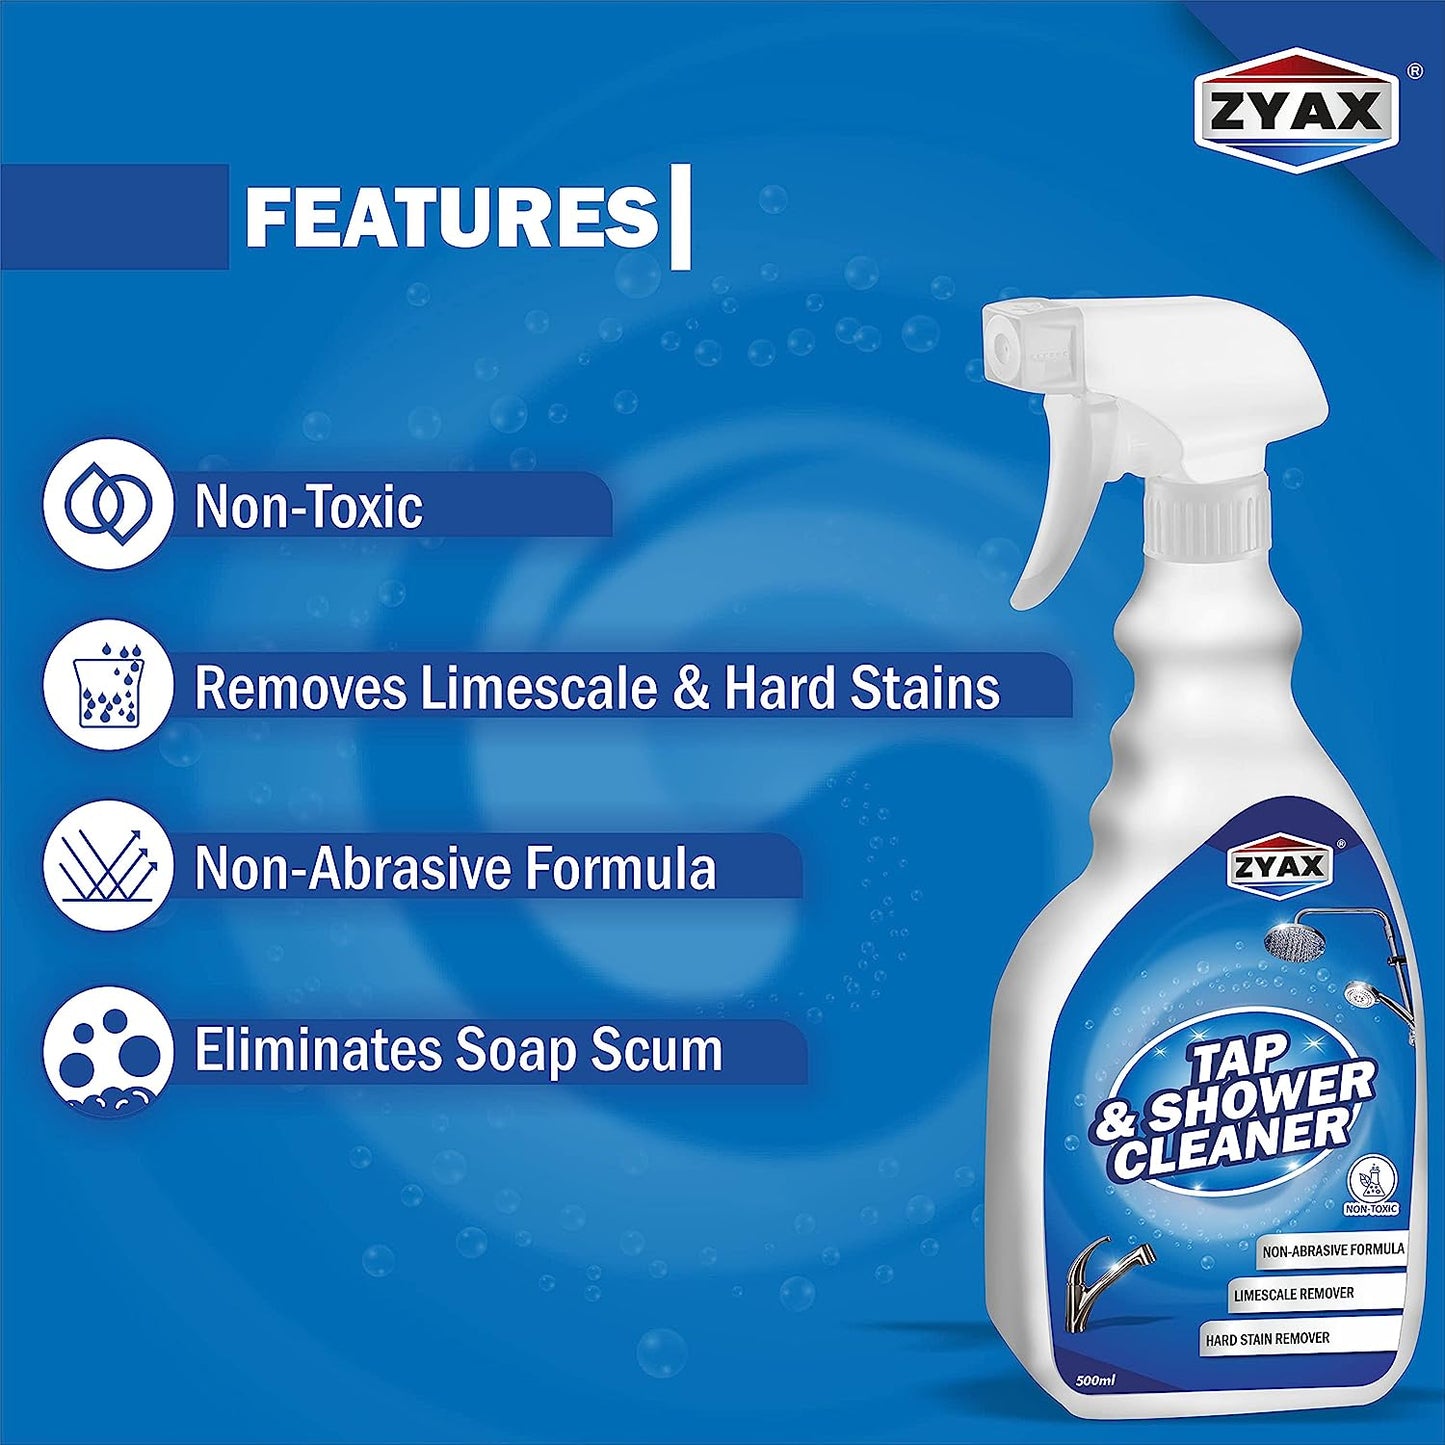 Zyax Tap & Shower Cleaner - Zyax.in